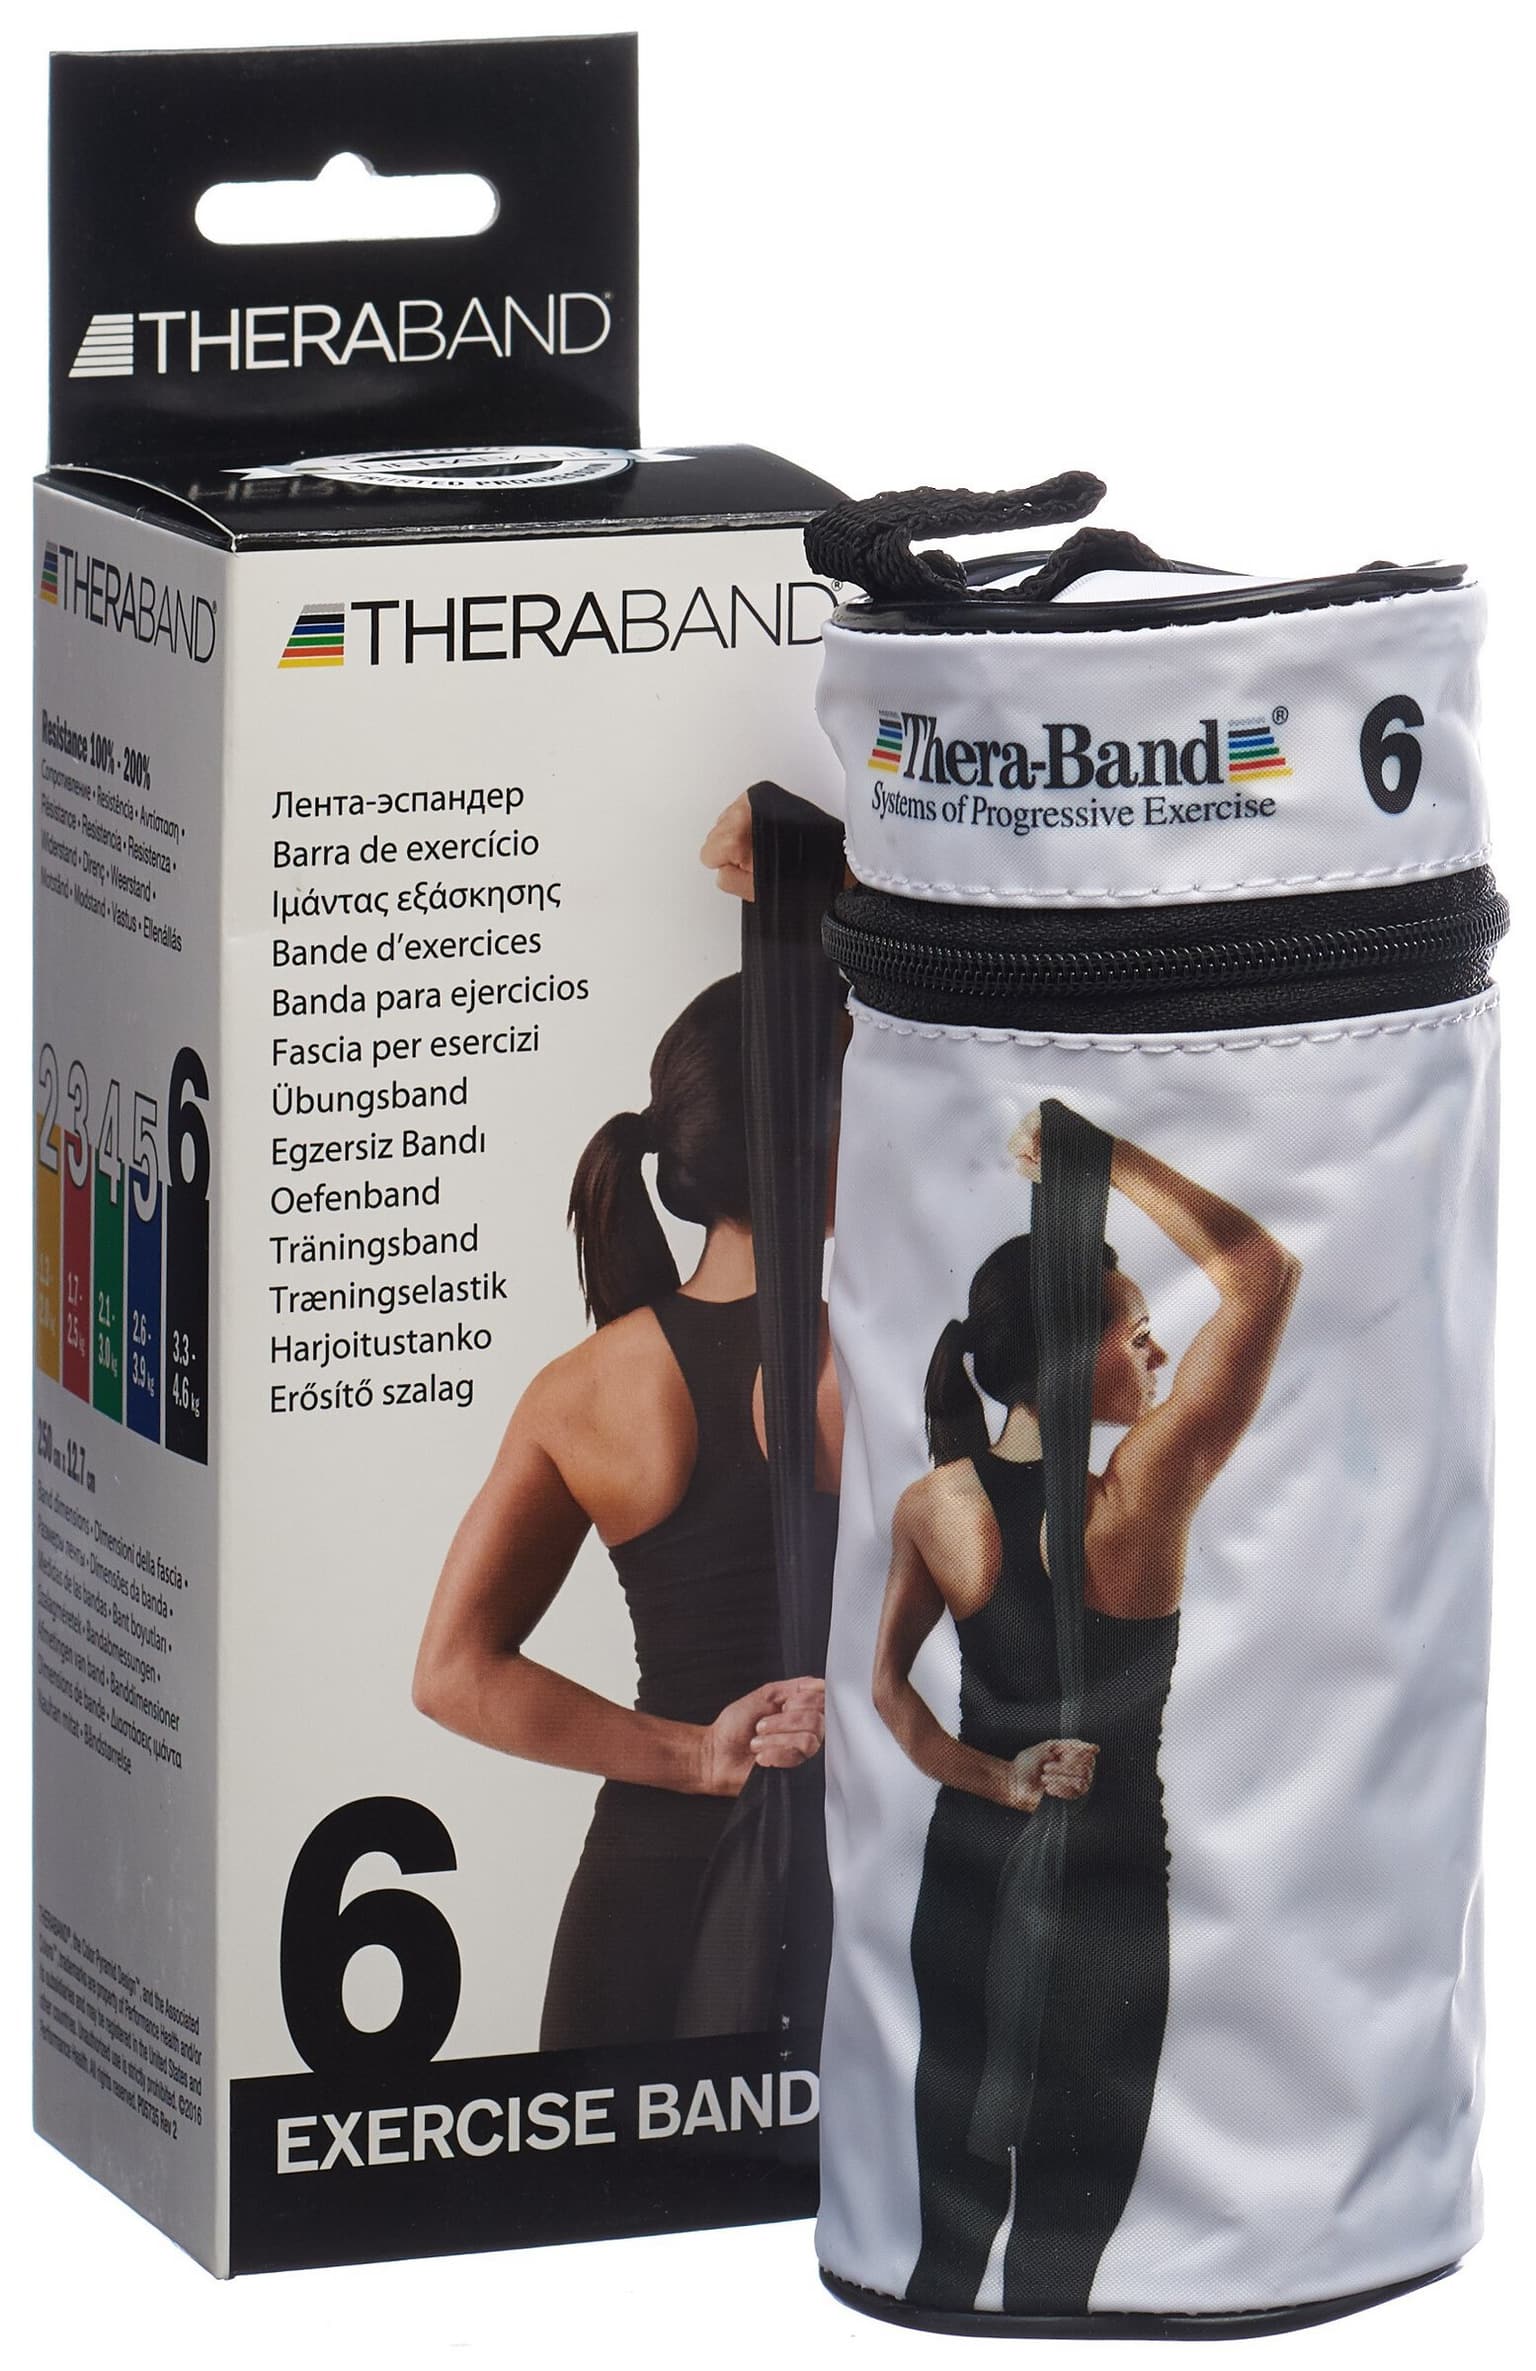 TheraBand TheraBand Fitnessband Fitnessband 2